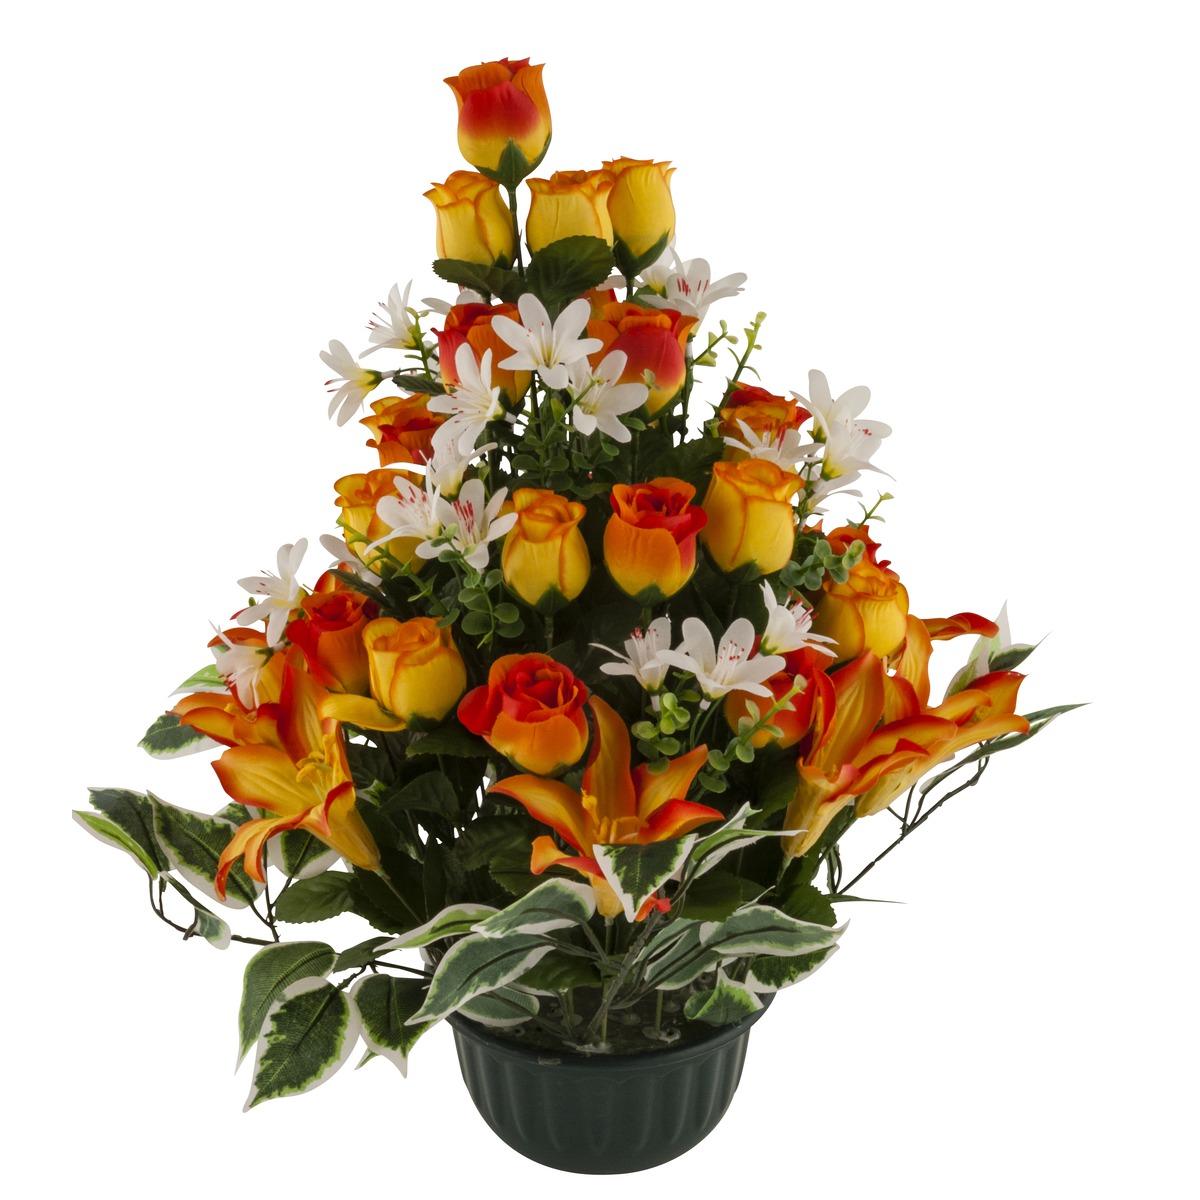 Coupe pyramide de lys et bouton de roses - 50 x 20 cm - Orange